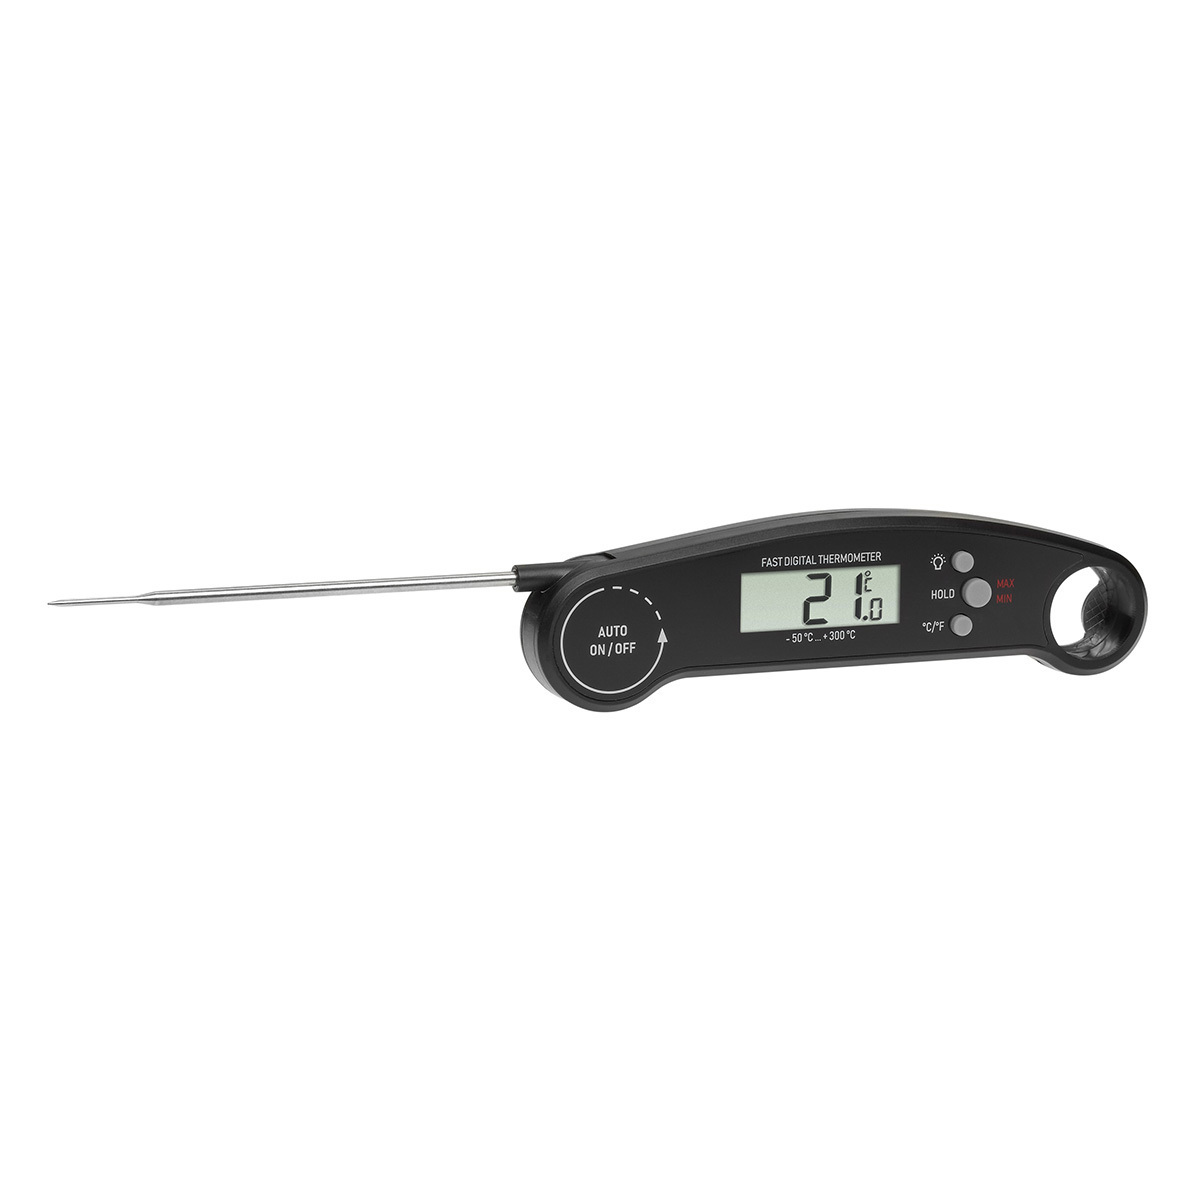 Küchenthermometer Temperaturanzeigen Küchendigitales Thermometer für die Küche 